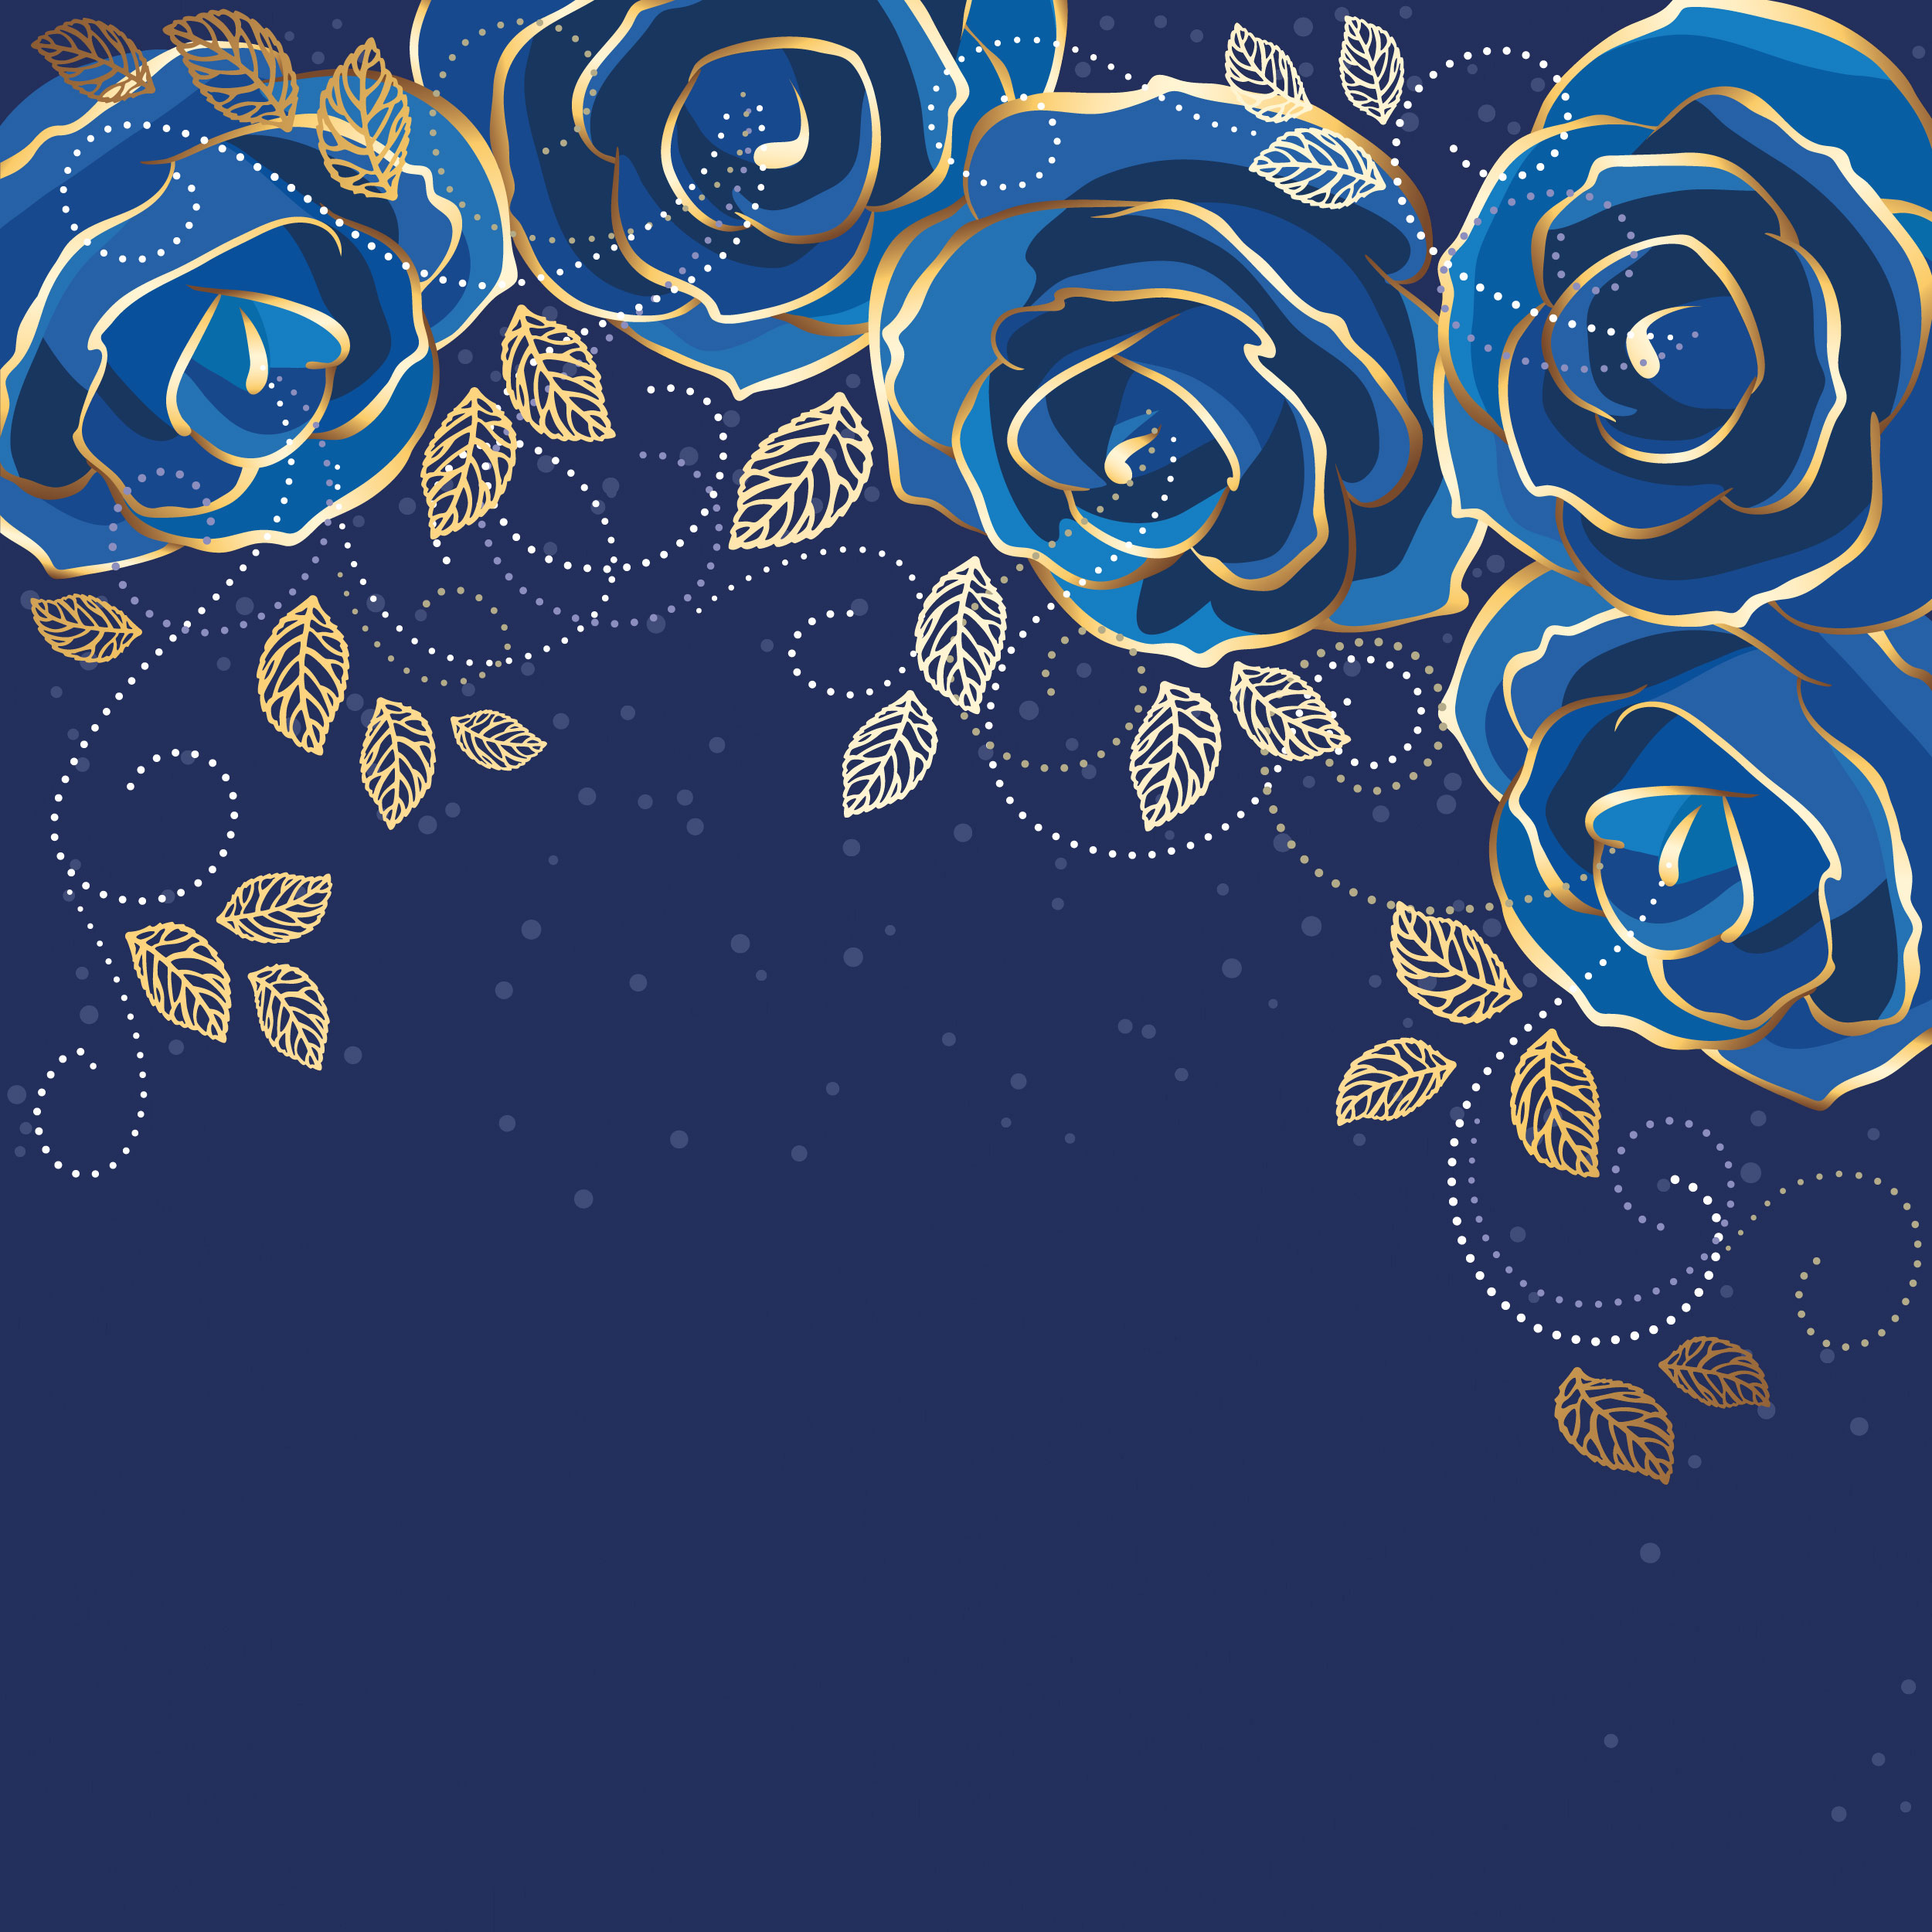 バラの画像 イラスト 壁紙 背景用 No 674 青いバラ 金色葉